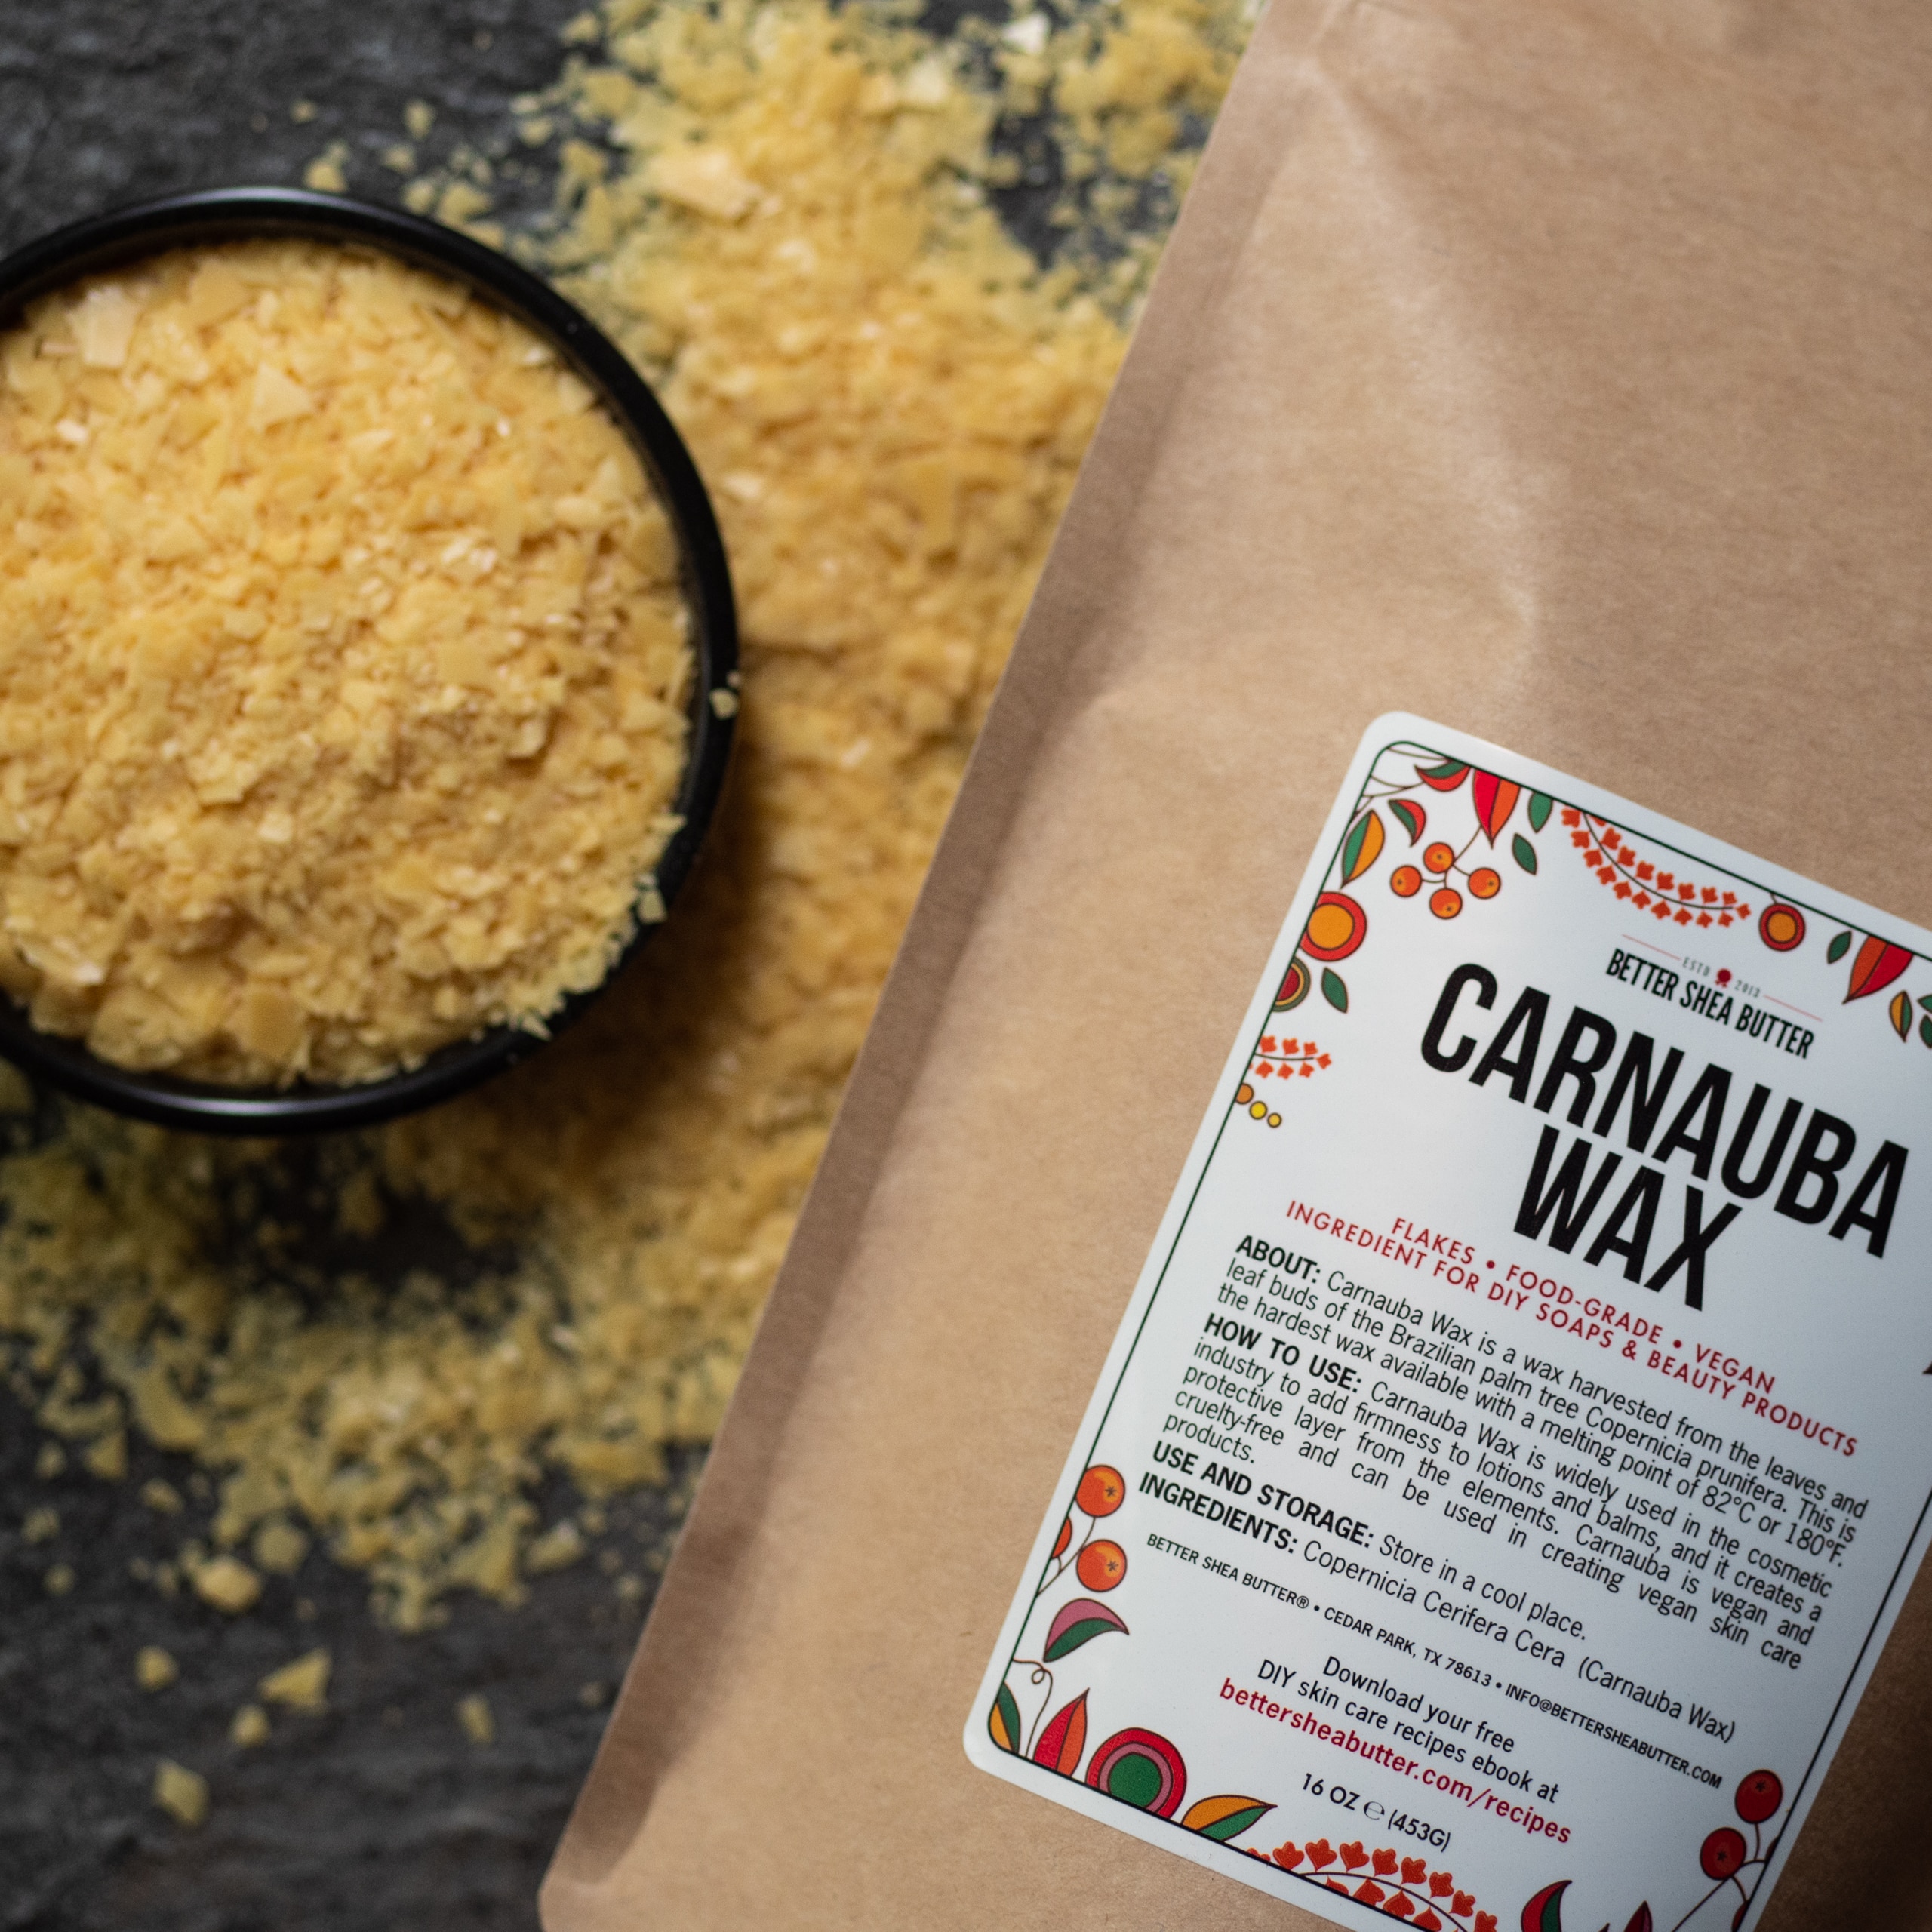 What is carnauba wax?